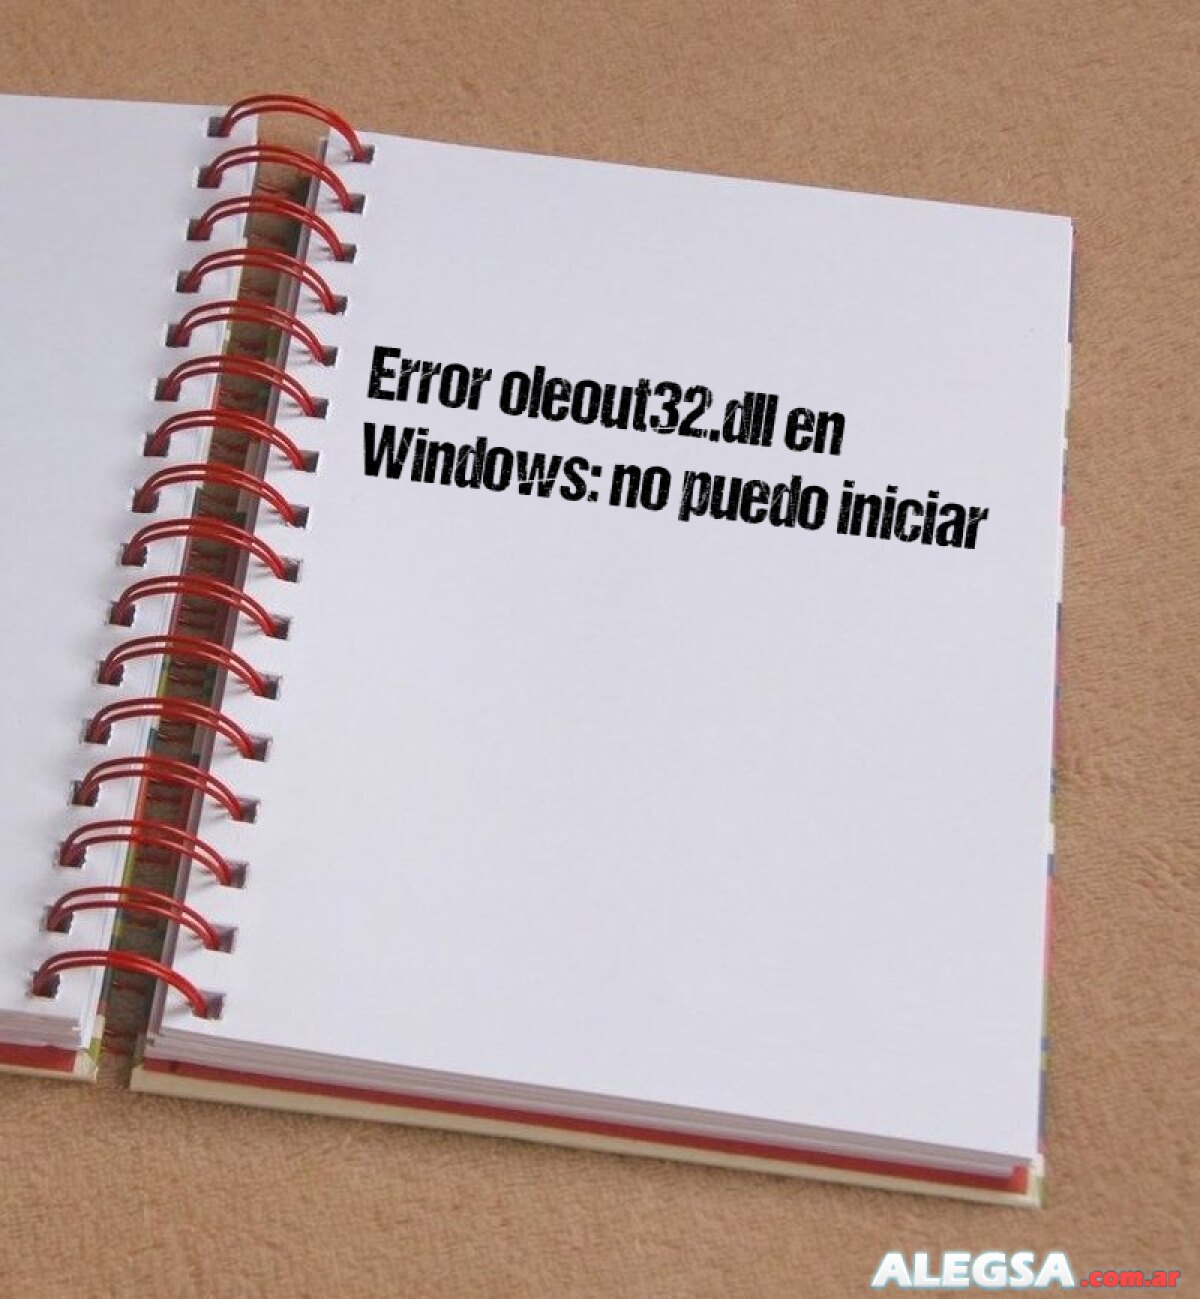 Error oleout32.dll en Windows: no puedo iniciar